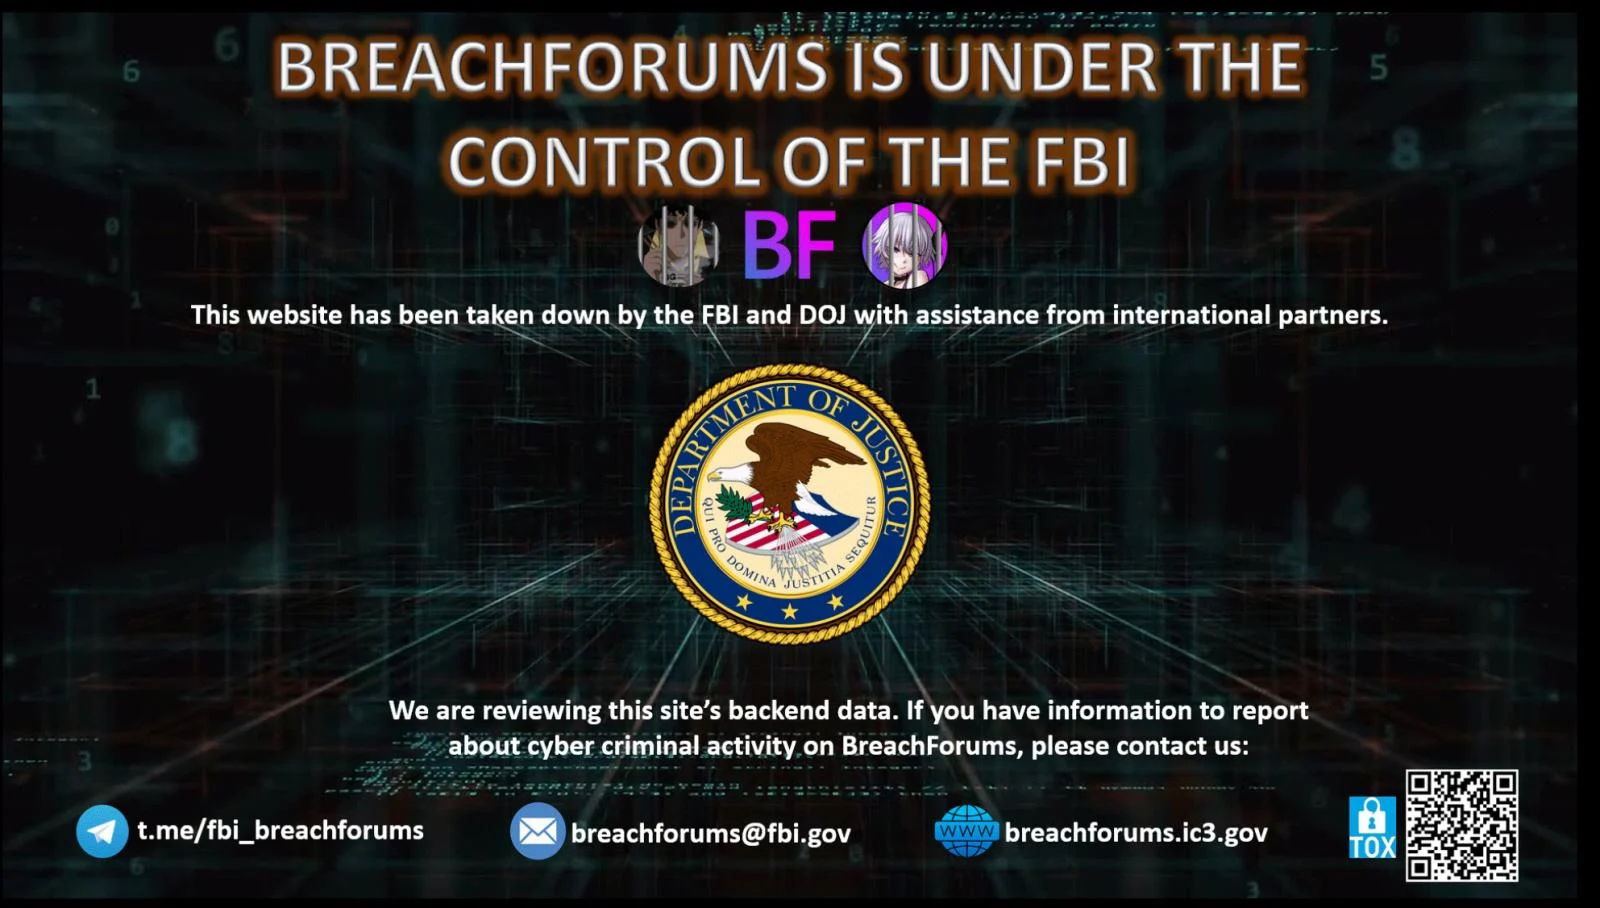 mensagem presente no site BreachForums do FBI